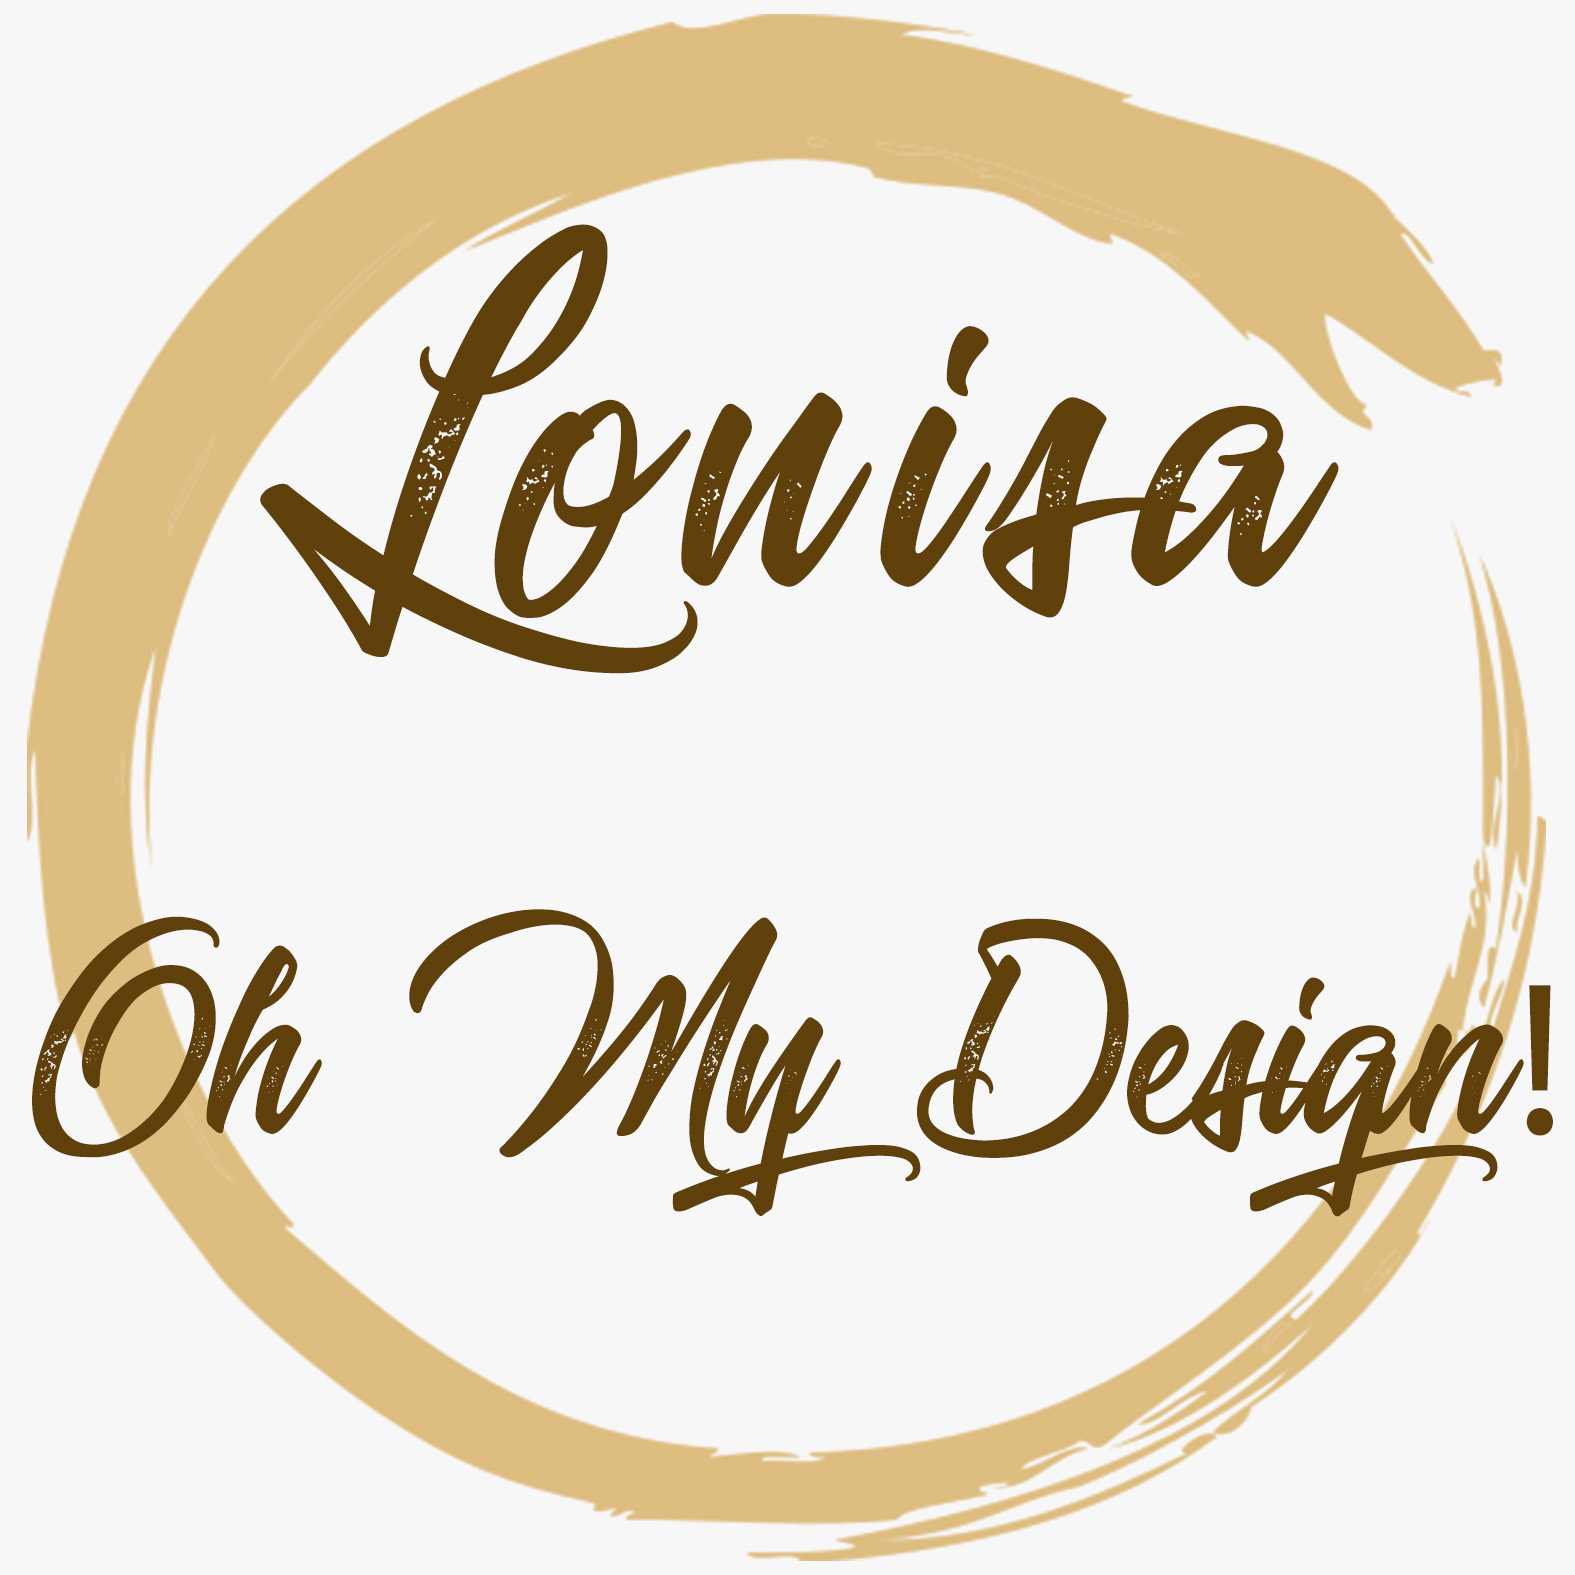 Louisa – Oh My Design!